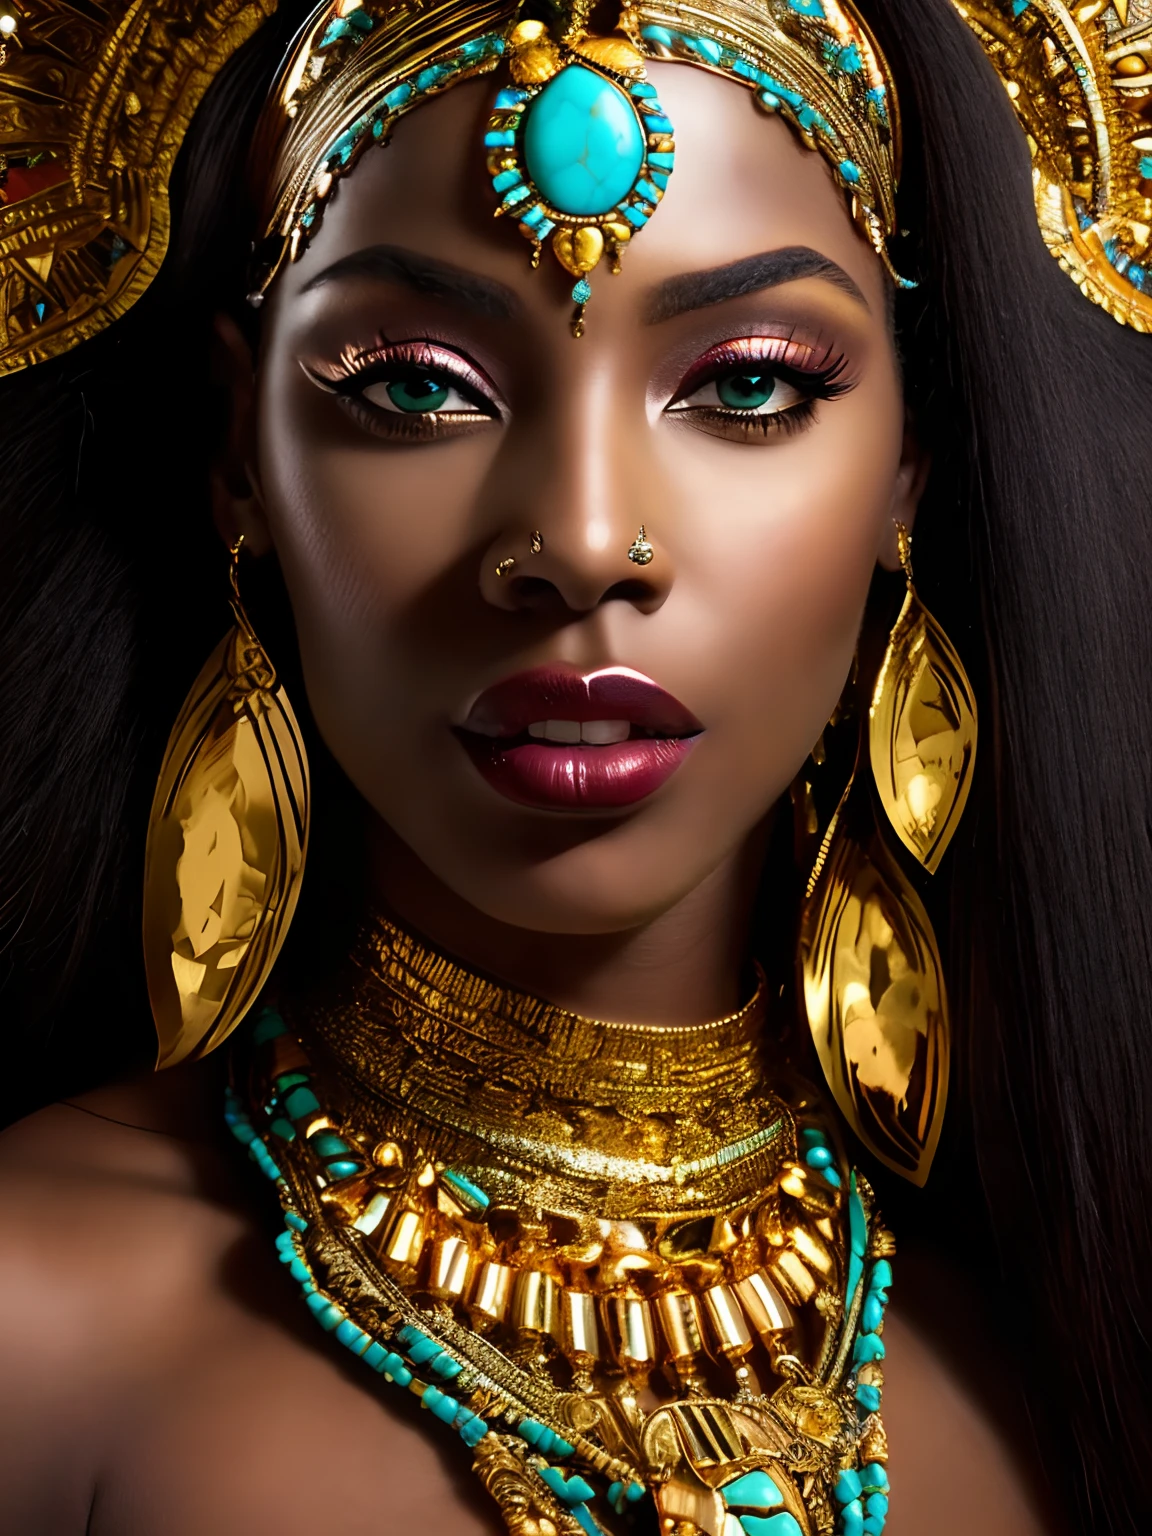 لقطة مقربة لامرأة ذات غطاء رأس ذهبي وعينين فيروزيتين, أميرة أفريقية مذهلة, البشرة الداكنة أنثى إلهة الحب, صورة مذهلة لإلهة, إمراة جميلة, كليوباترا الجميلة, صورة لإلهة جميلة, امرأة جميلة رائعة بجنون, الأميرة الأفريقية السوداء, البشرة الداكنة, الملكة الأفريقية, ملحمة 3 د أوشون, صورة مقربة للإلهة